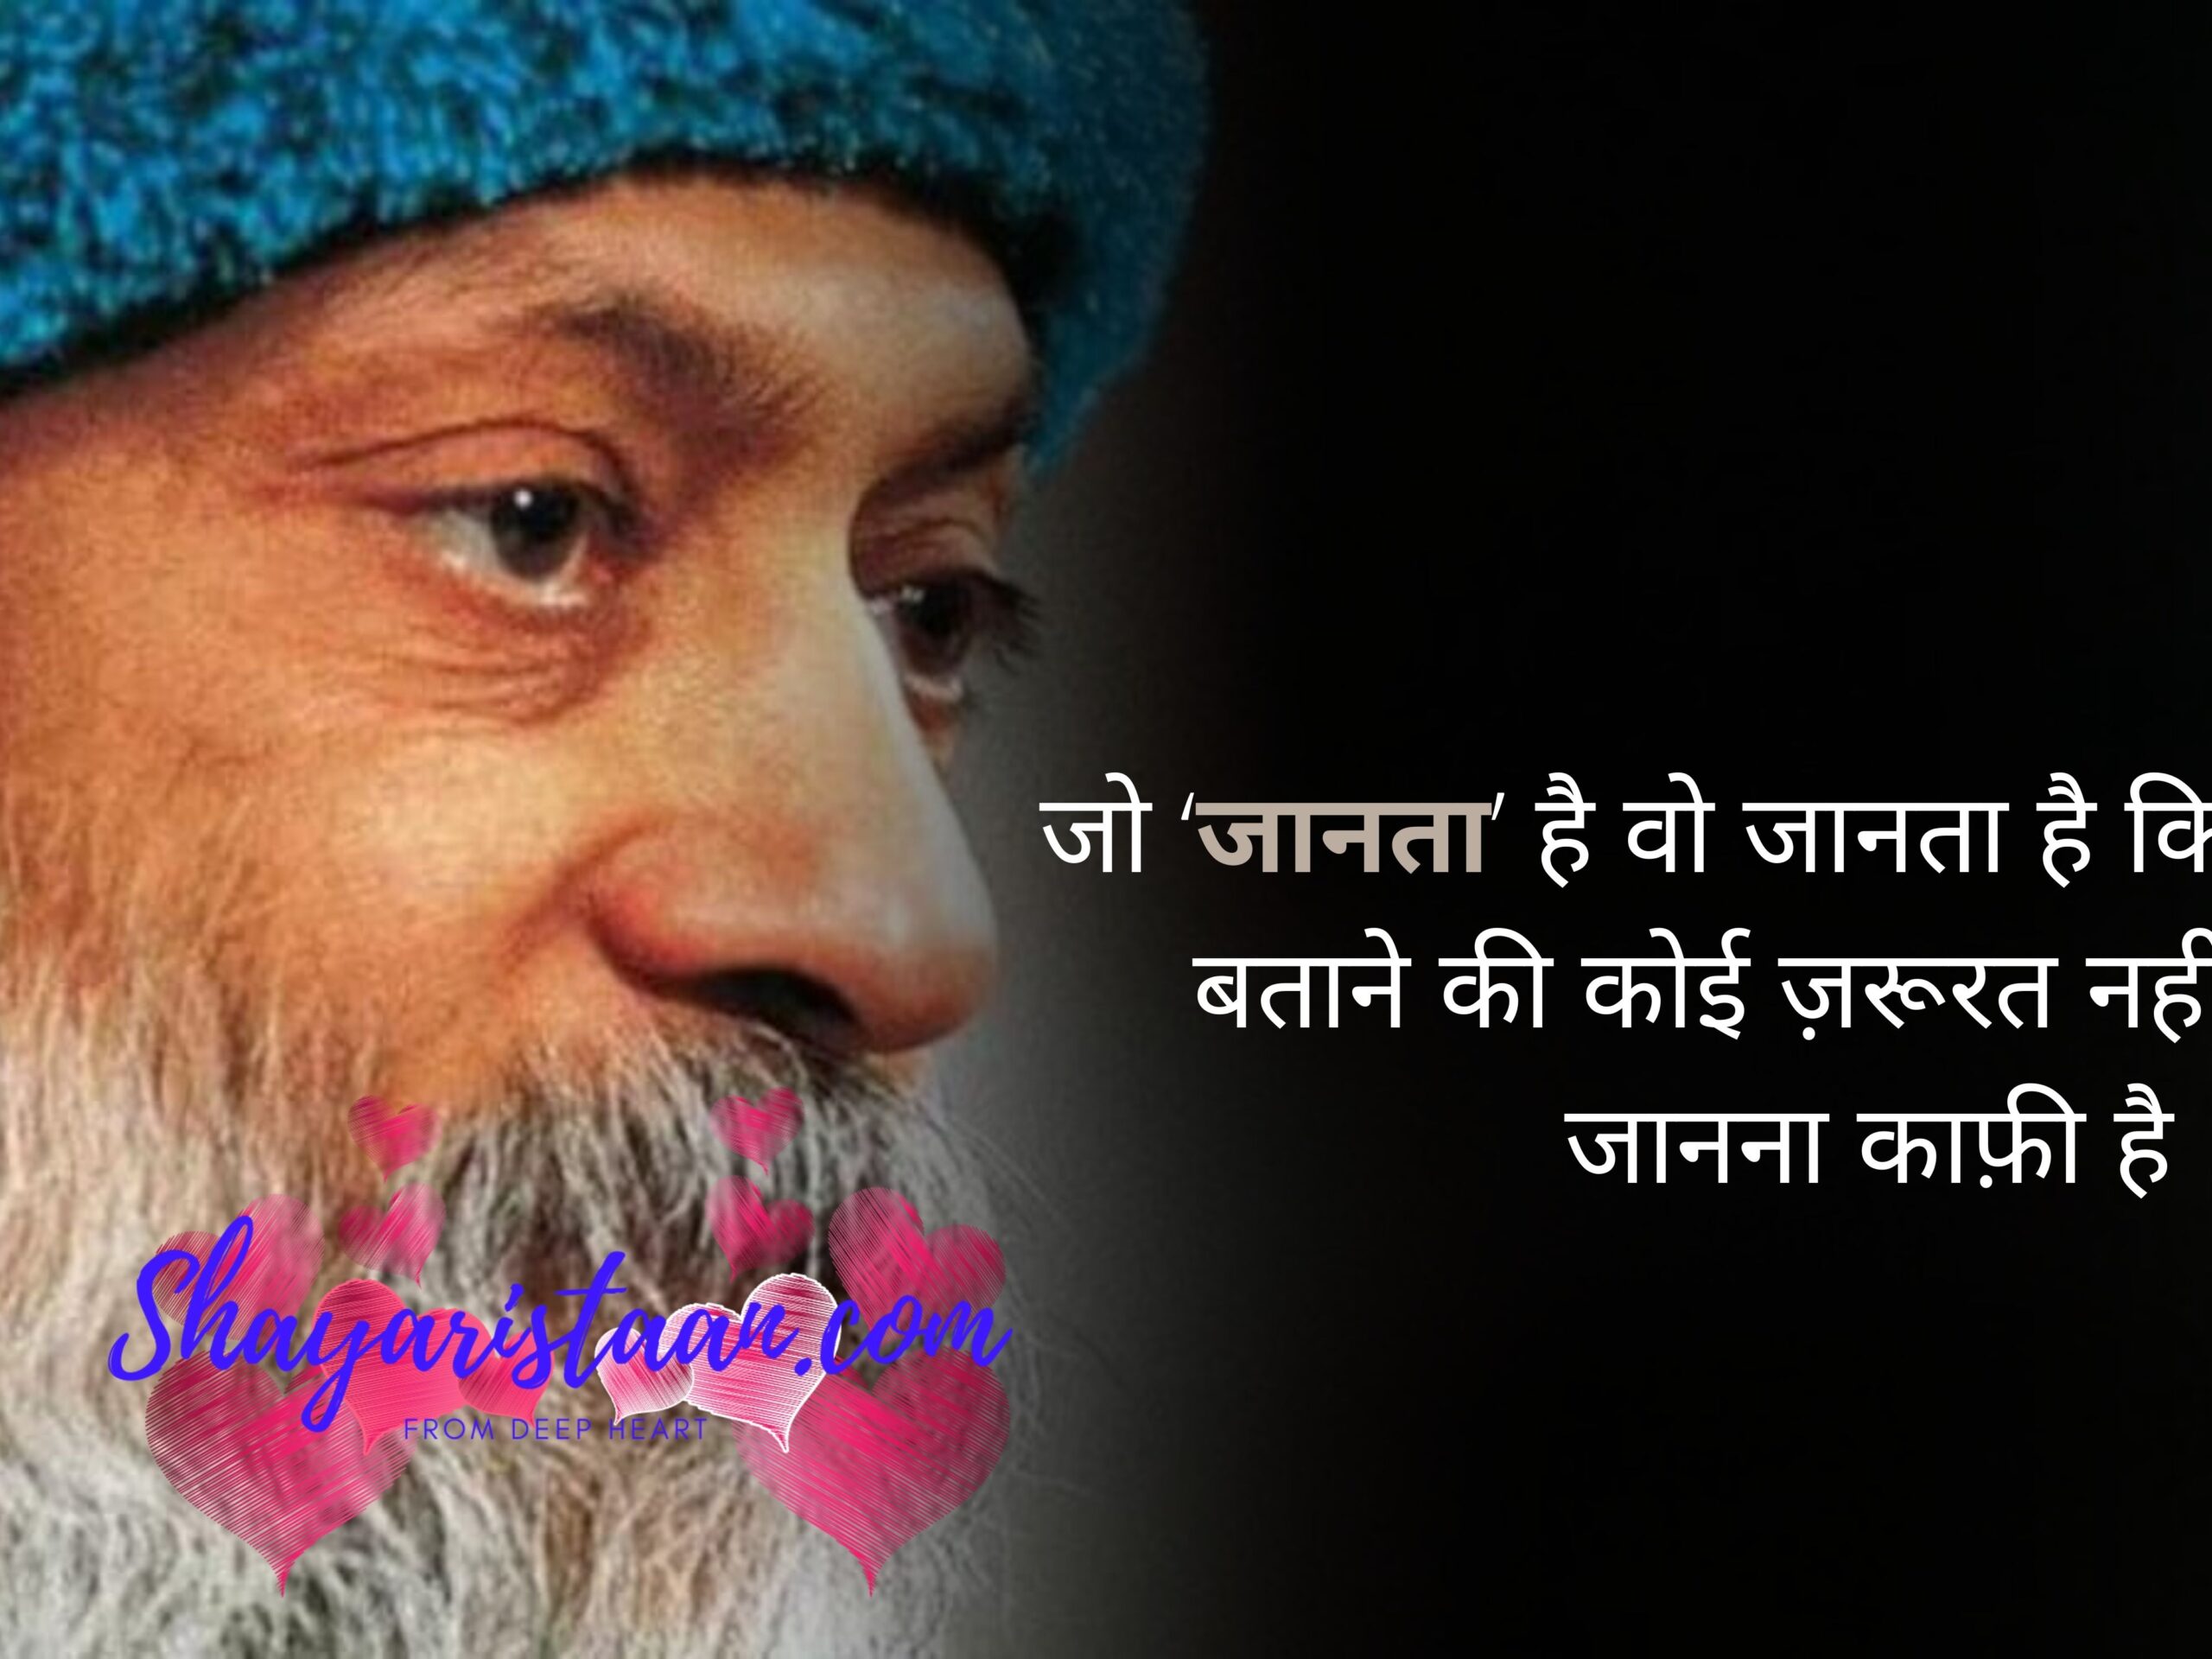 osho quotes on love in hindi | जो ‘जानता’ है वो जानता है कि, बताने की कोई ज़रूरत नहीं. जानना काफ़ी है |